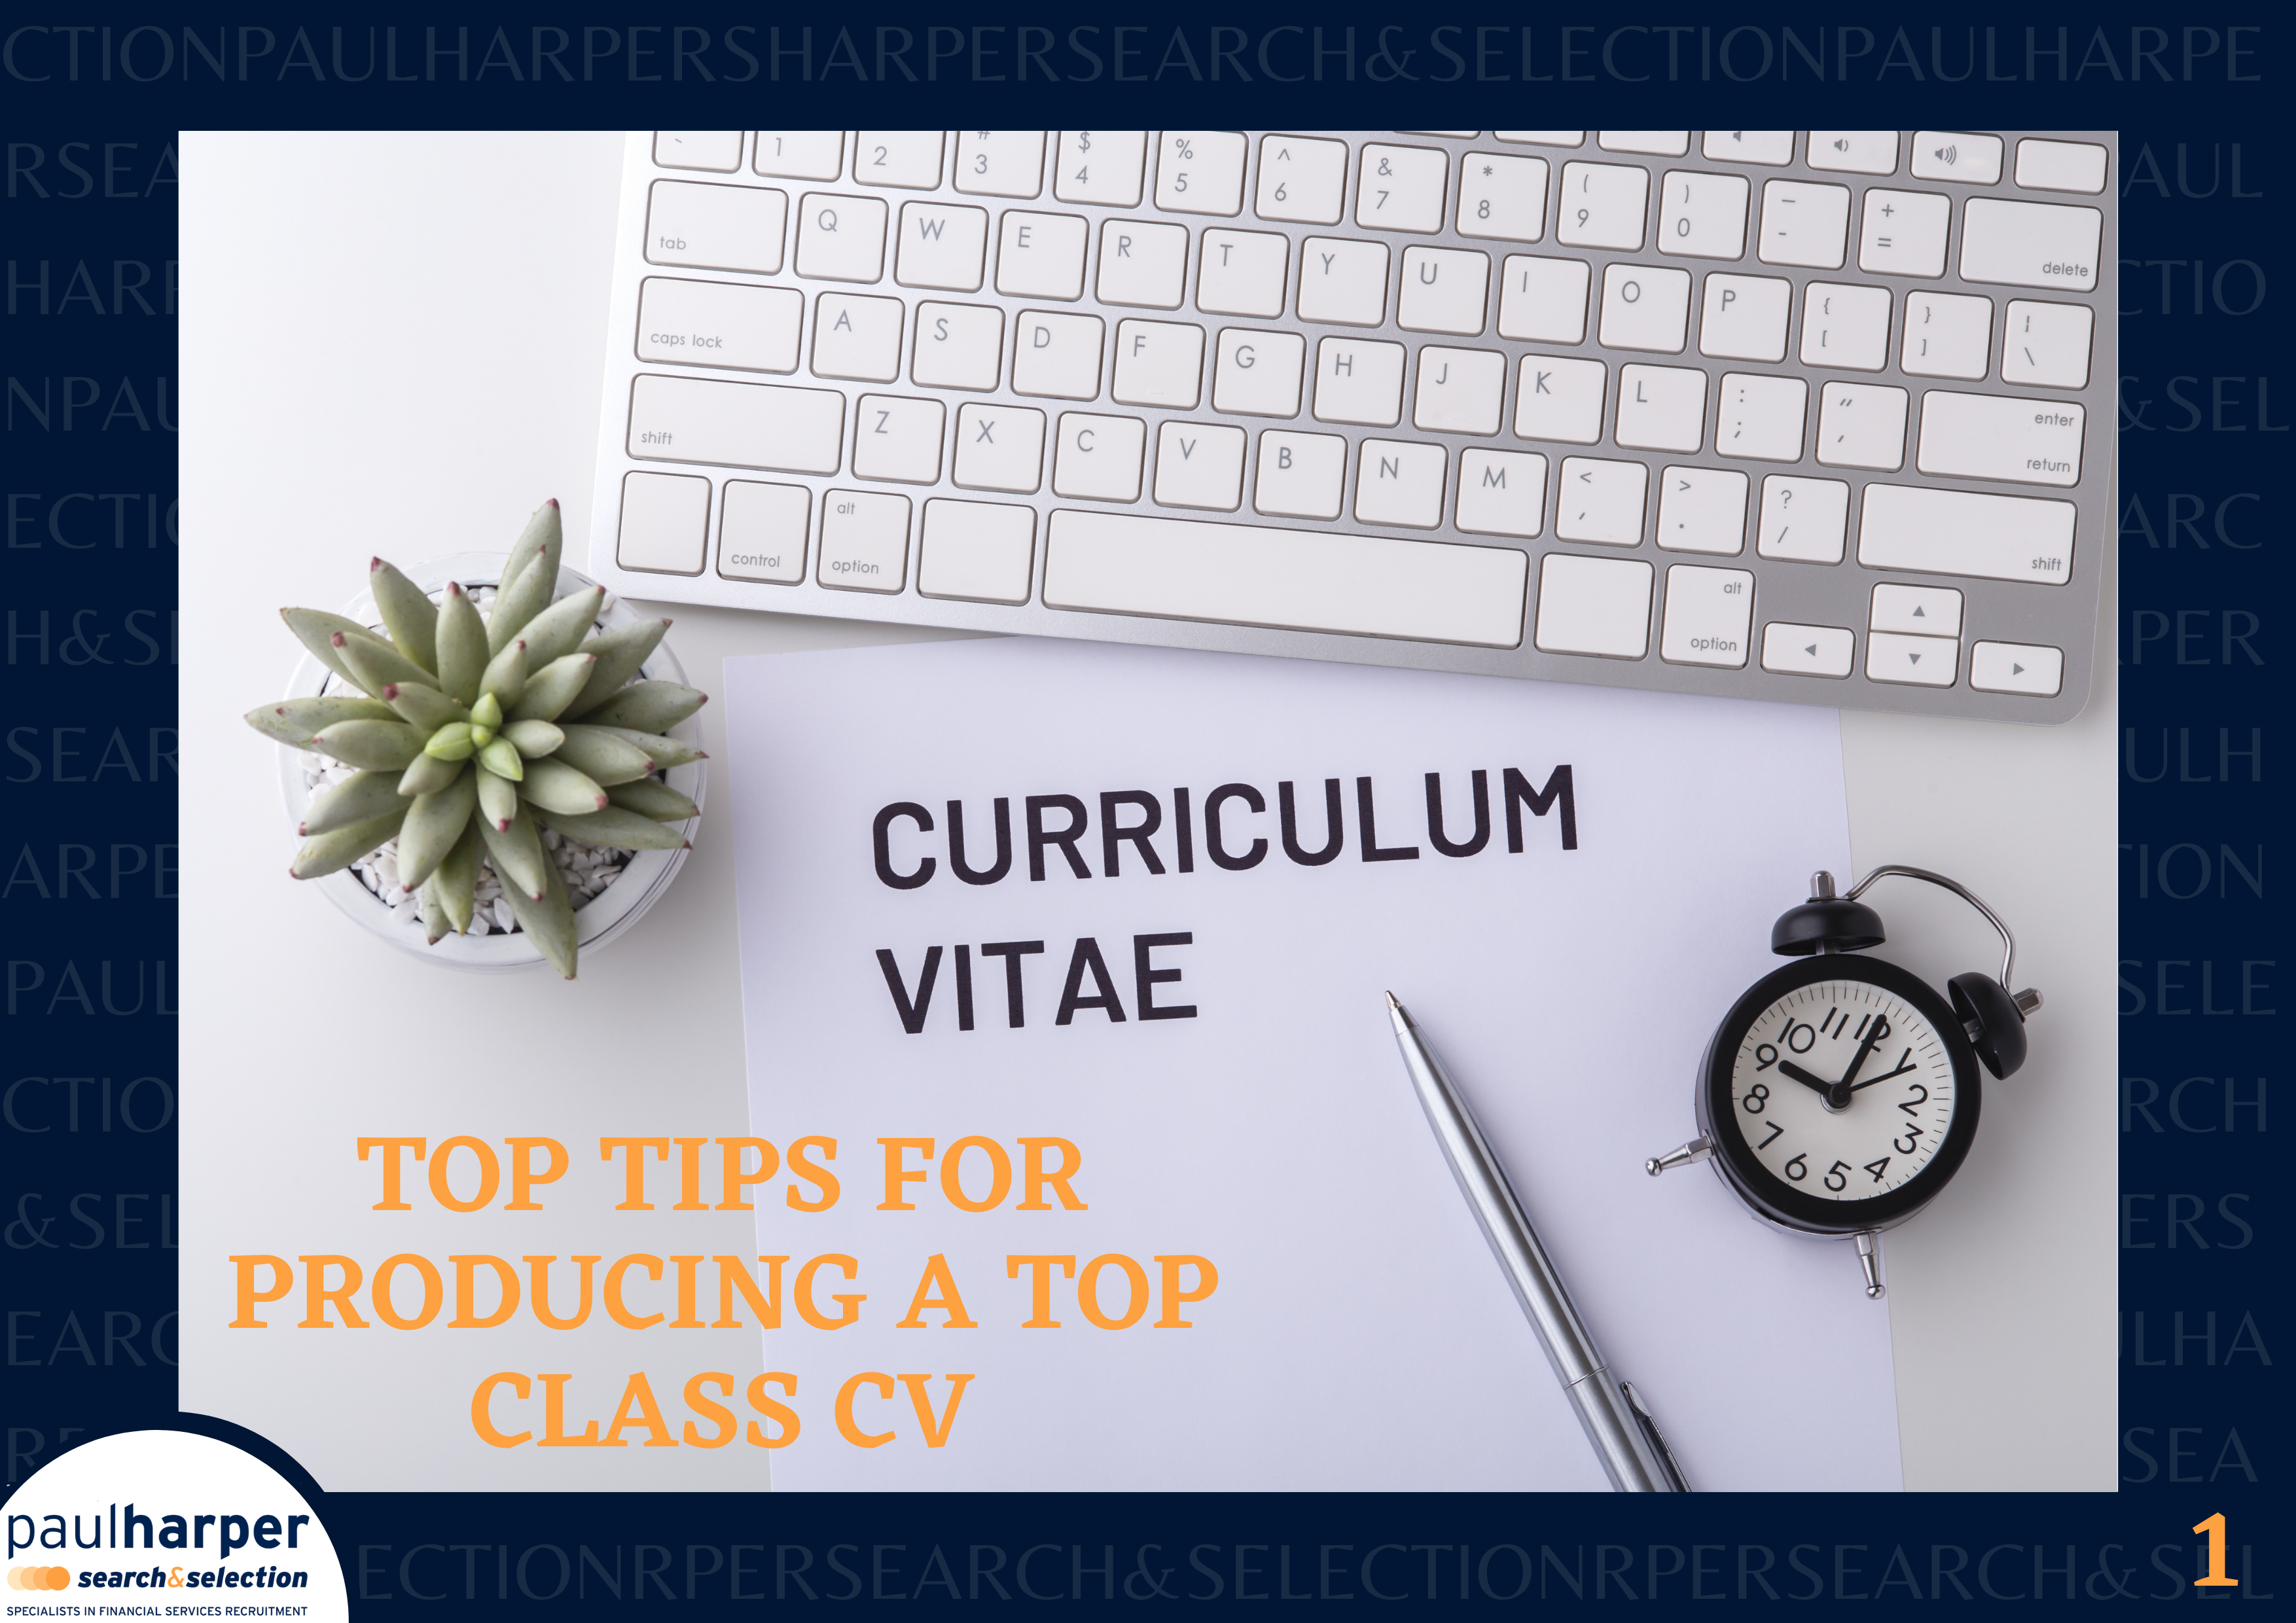 Top Tips for Producing a Top Class CV